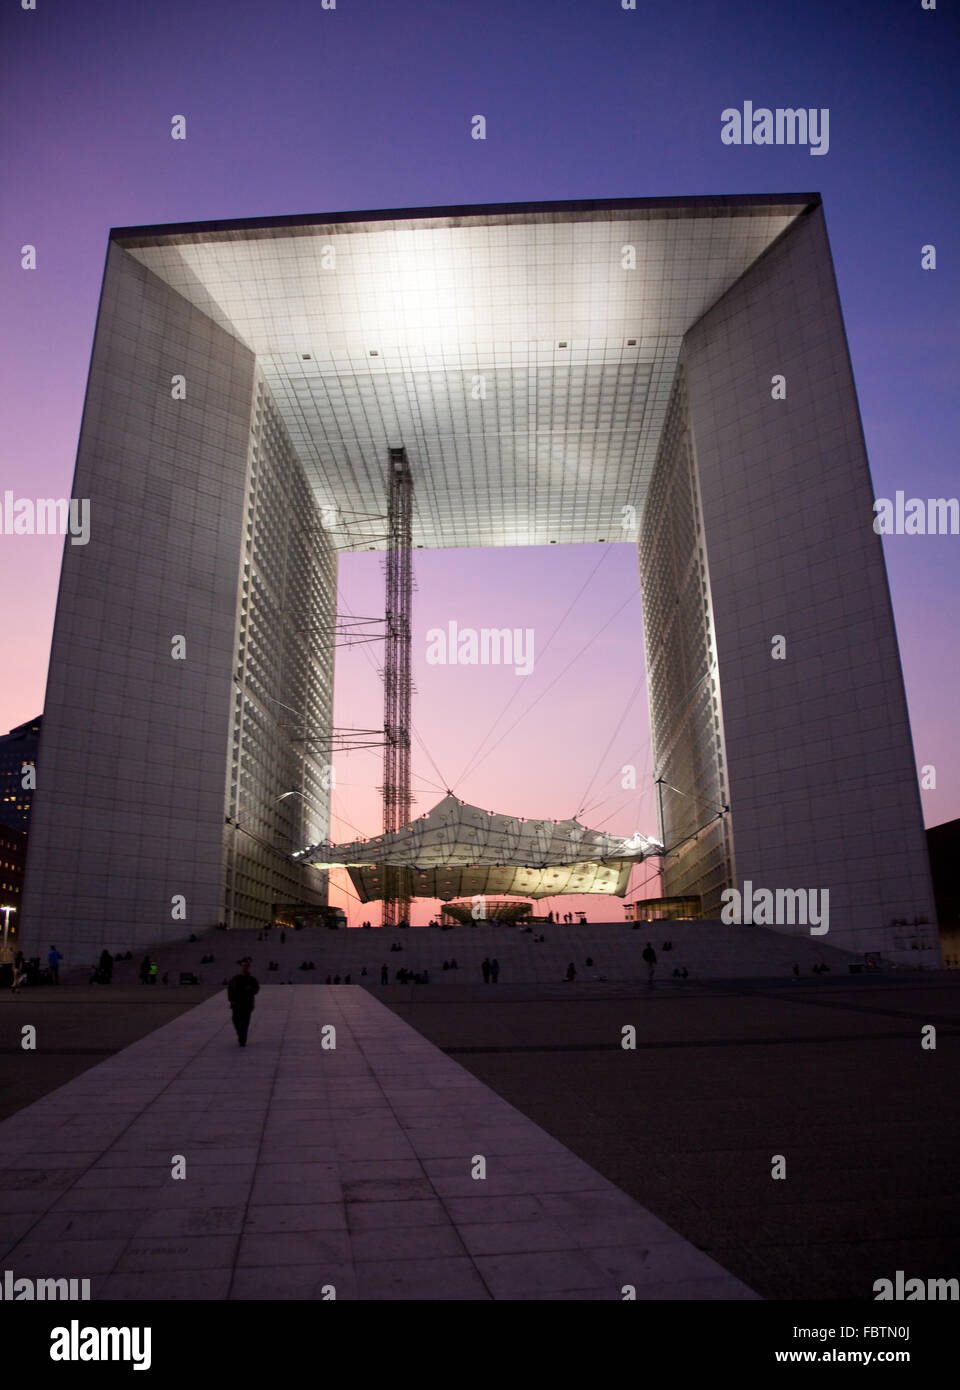 La Grande Arche in La Defense in Paris at sunset Stock Photo